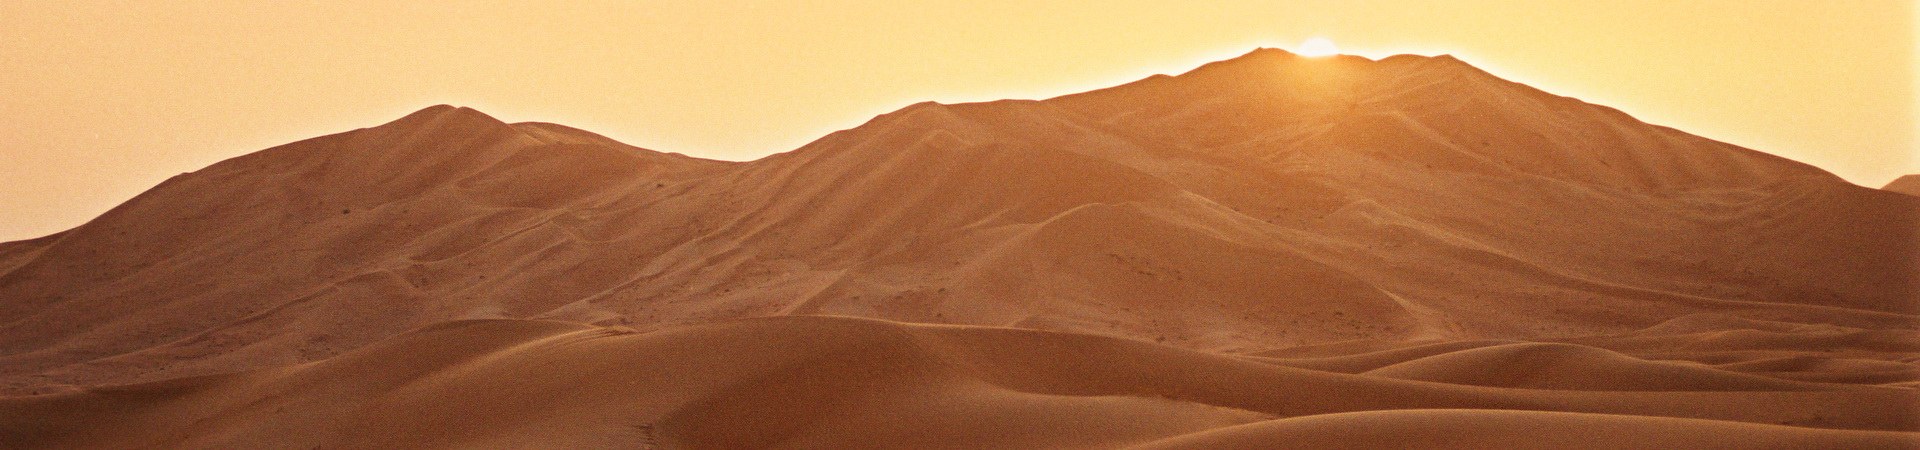 Die Farbe des Sandes verändert sich je nach Sonnenstand.